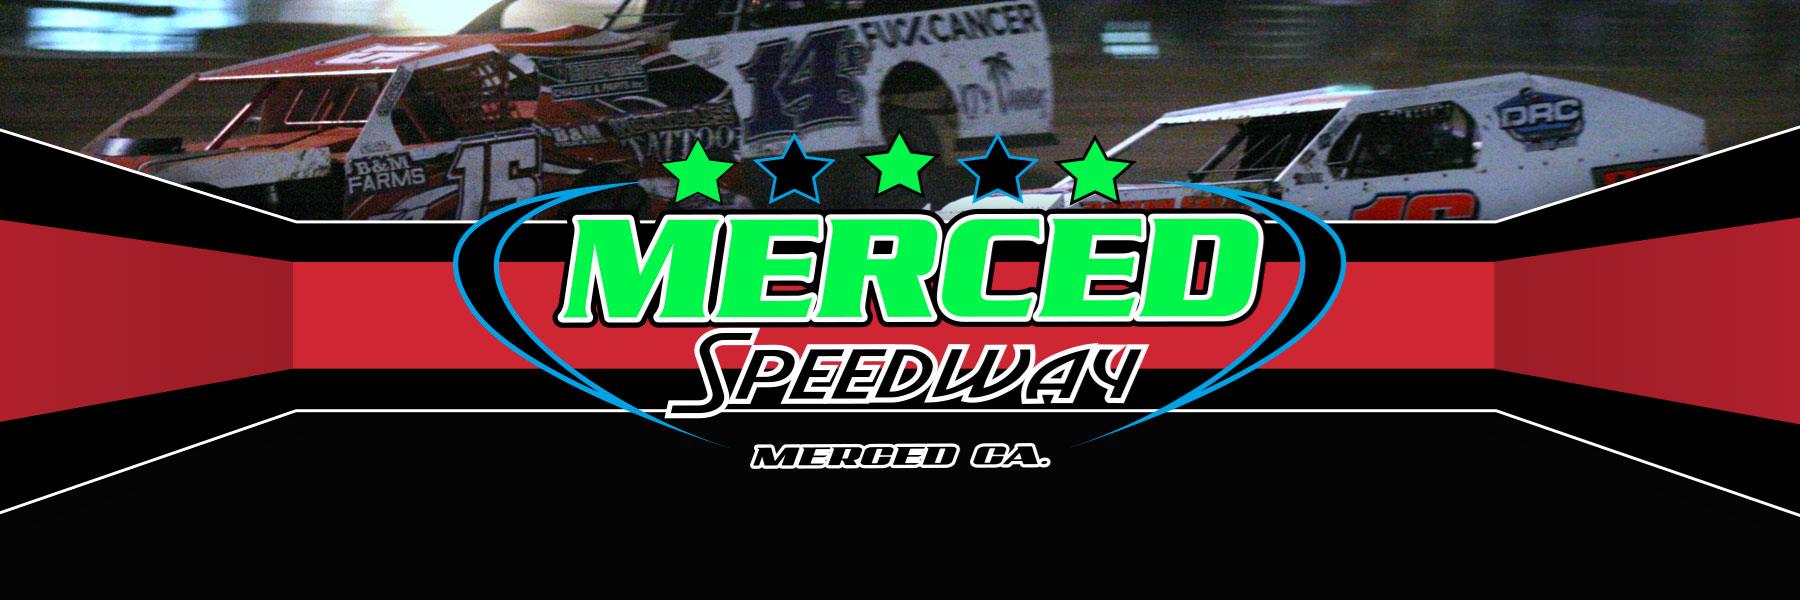 7/9/2021 - Merced Speedway